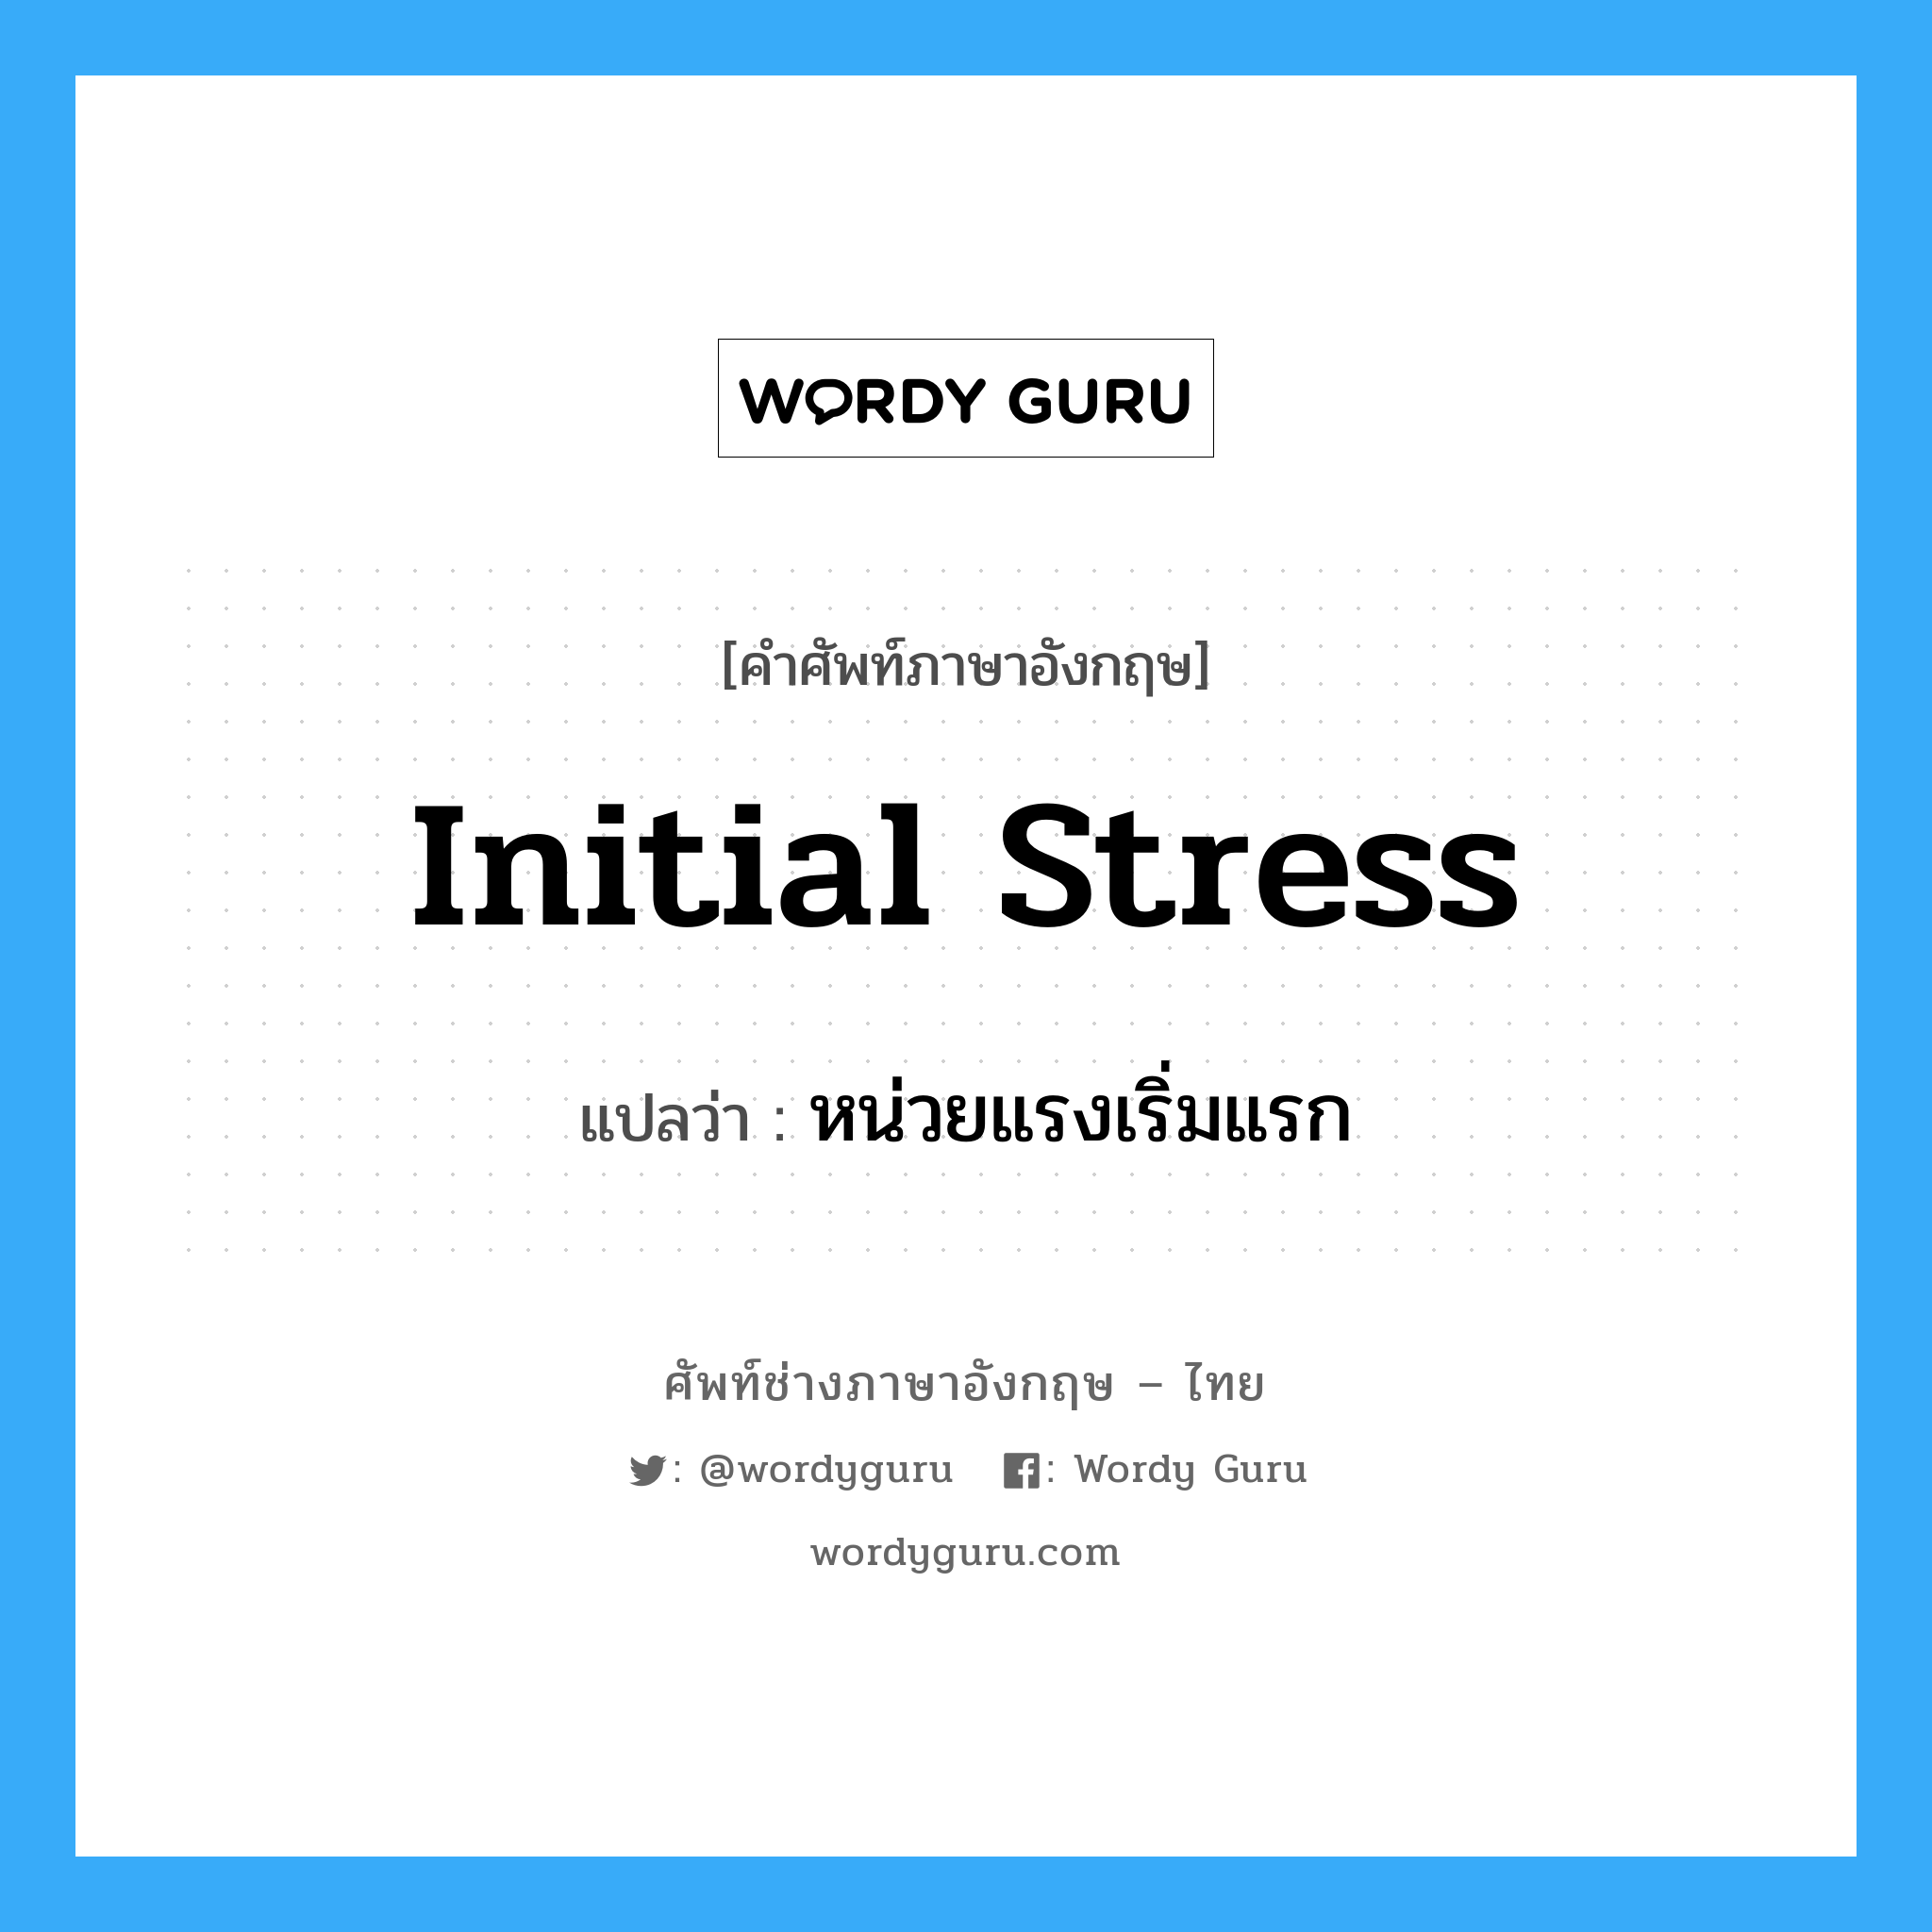 initial stress แปลว่า?, คำศัพท์ช่างภาษาอังกฤษ - ไทย initial stress คำศัพท์ภาษาอังกฤษ initial stress แปลว่า หน่วยแรงเริ่มแรก